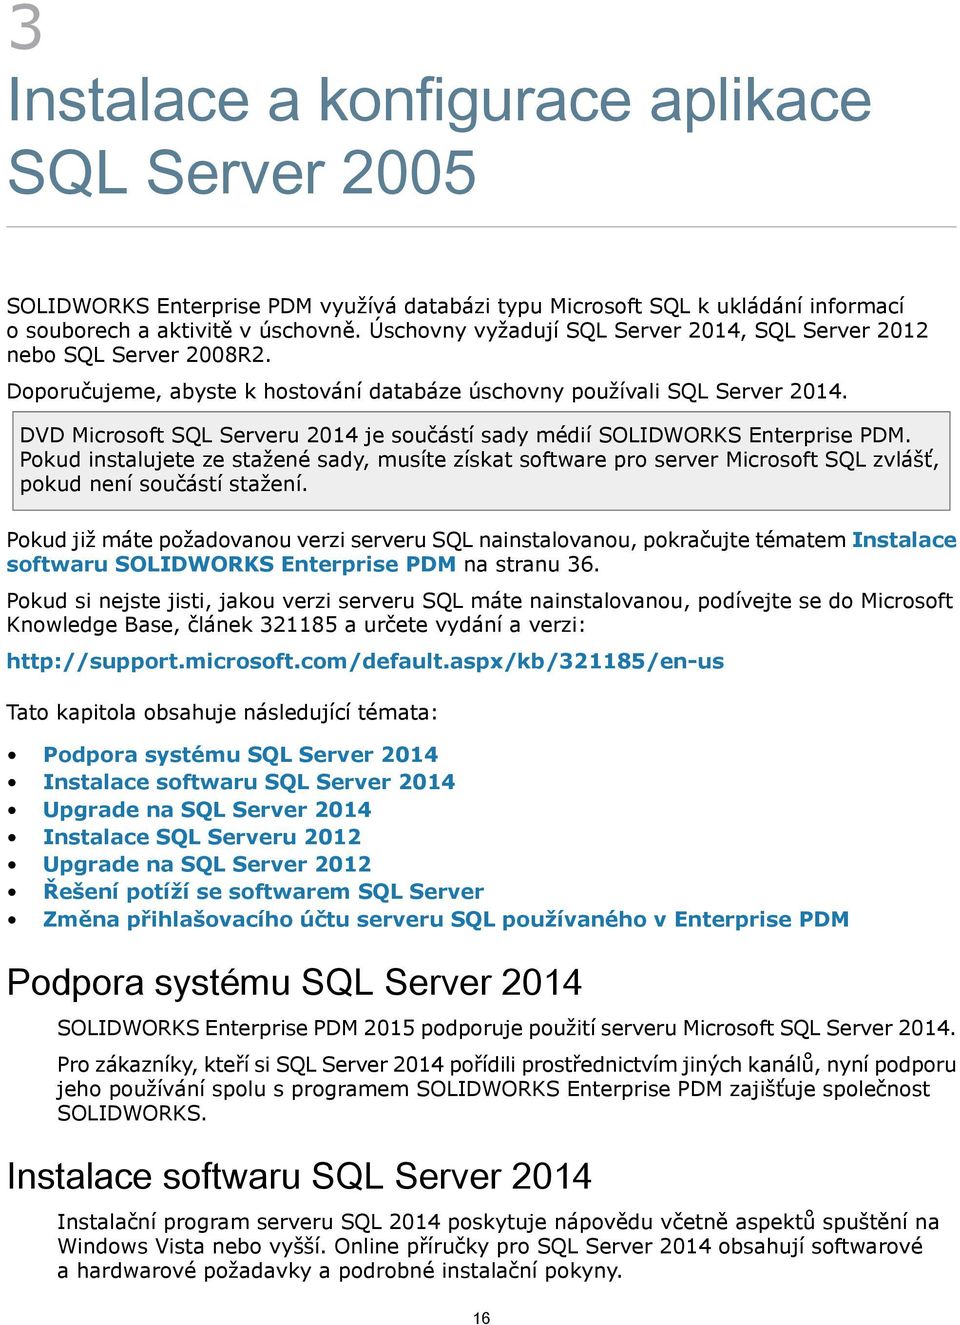 DVD Microsoft SQL Serveru 2014 je součástí sady médií SOLIDWORKS Enterprise PDM. Pokud instalujete ze stažené sady, musíte získat software pro server Microsoft SQL zvlášť, pokud není součástí stažení.